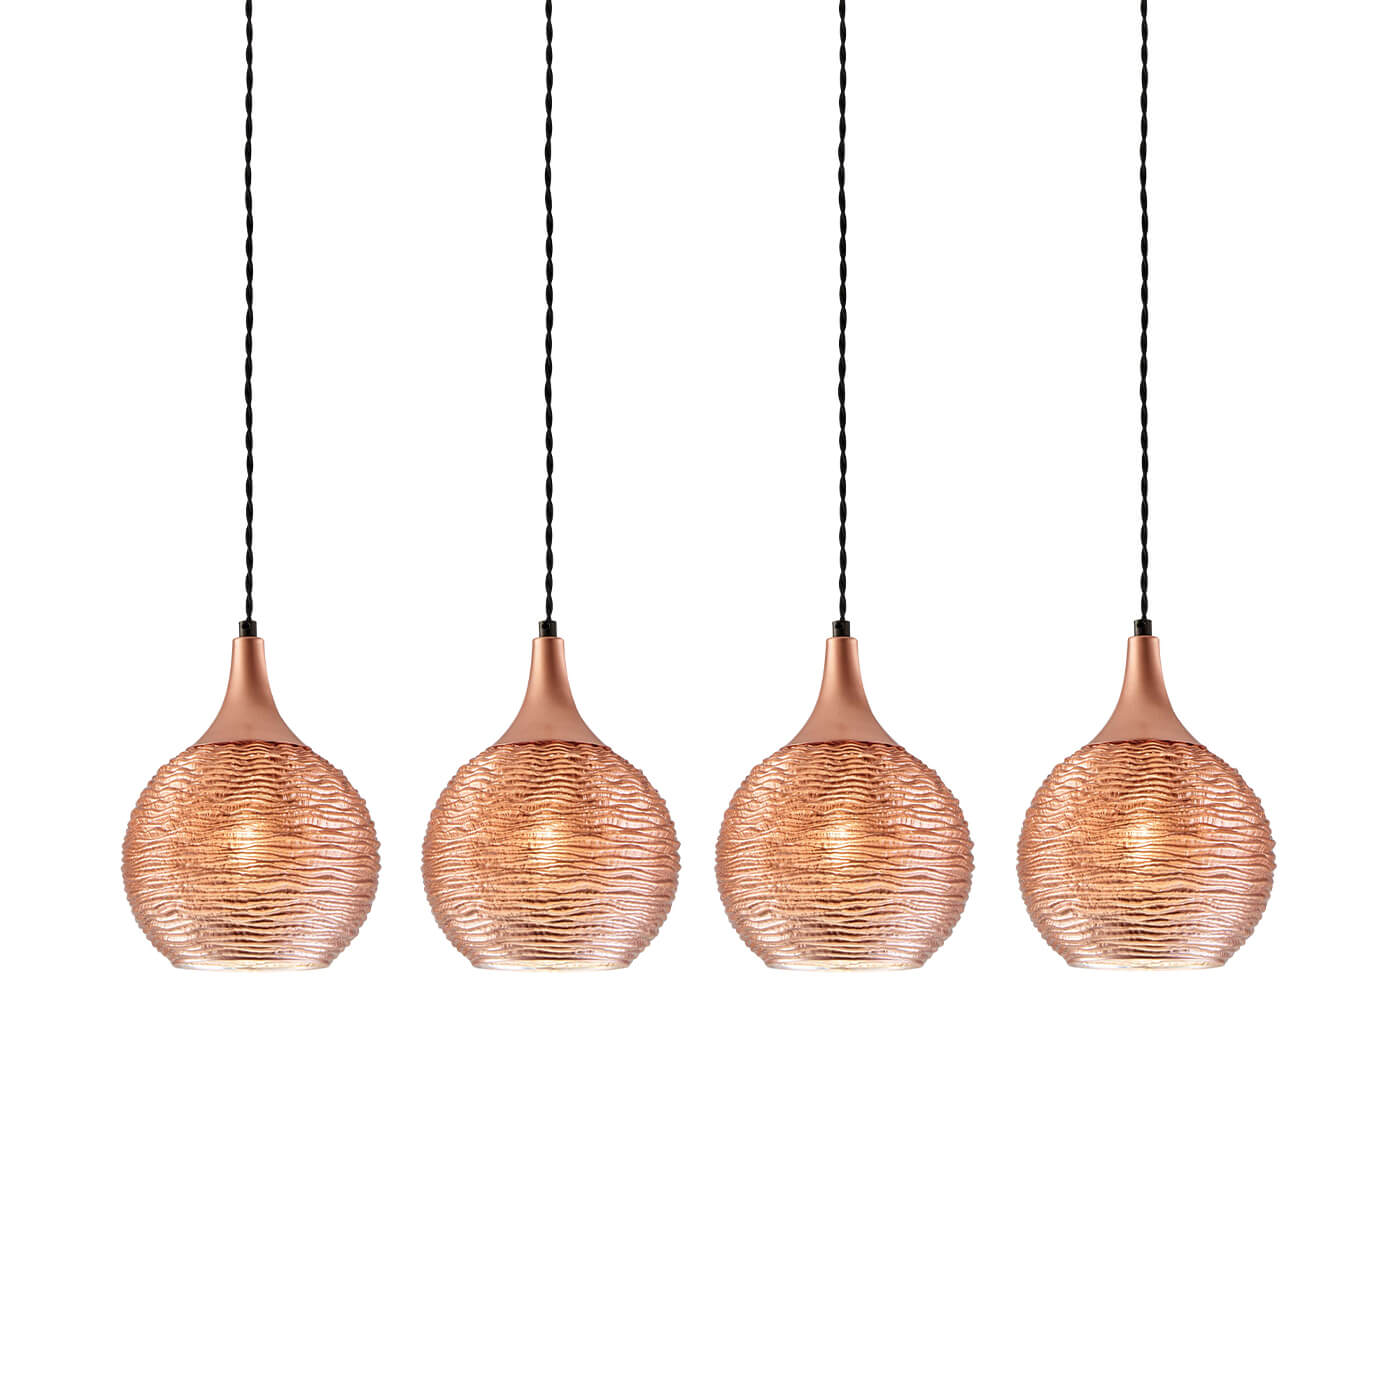 Cauti o lampa suspendata FIONA S4 cu abajur din sticla, design modern, elegant, pentru living, dining sau dormitor din colectia de lustre si candelabre Domicilio?